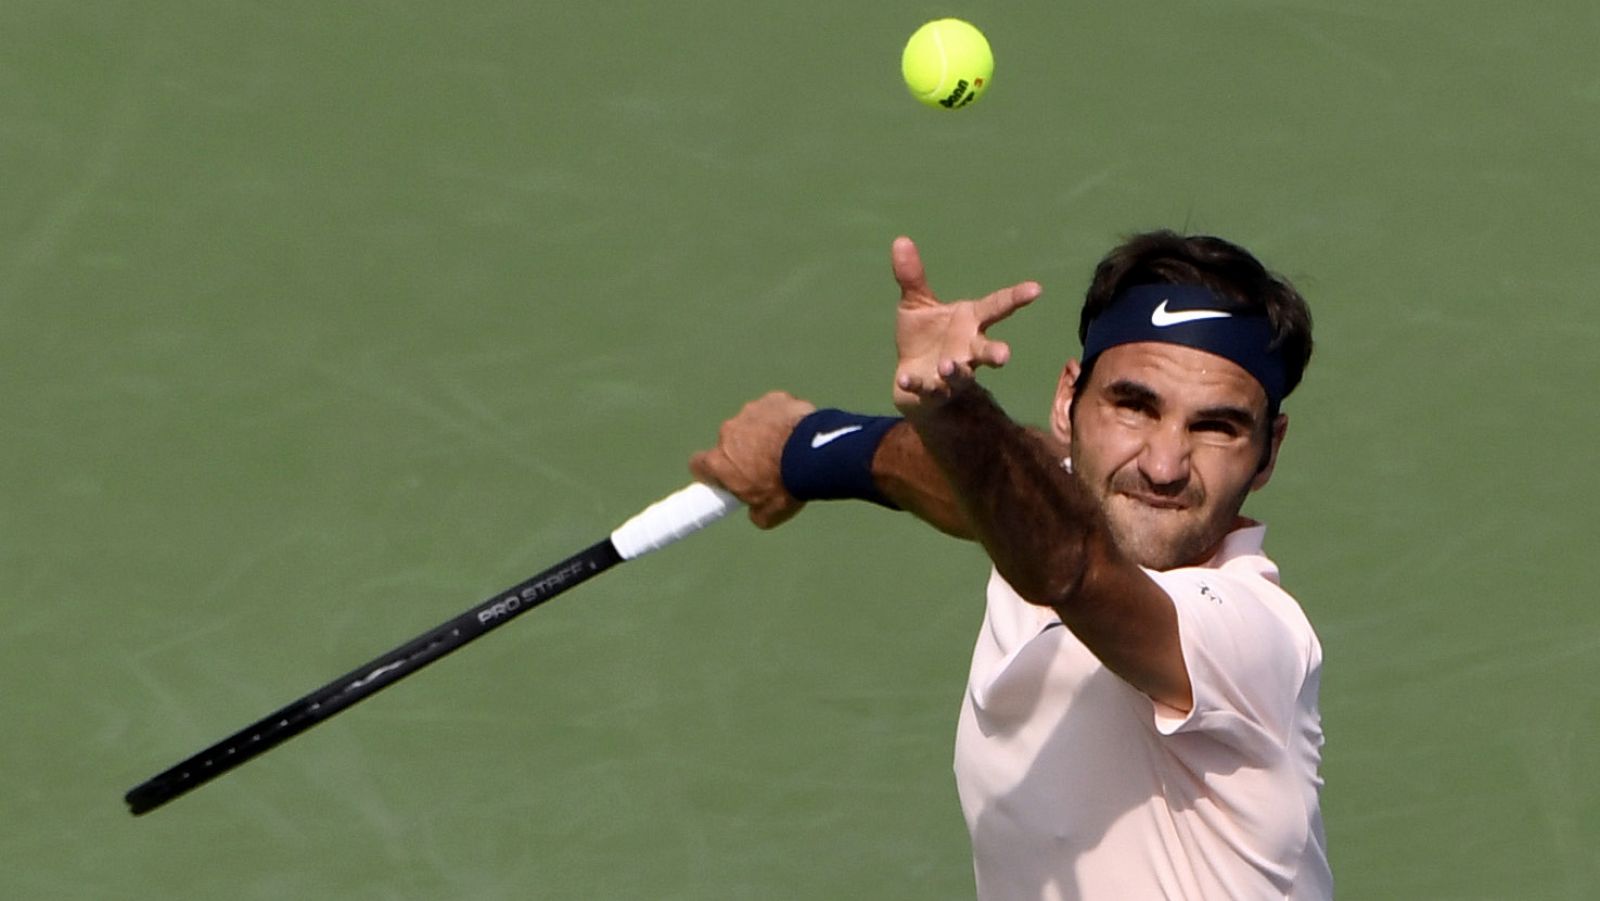 El tenista suizo Roger Federer, en su partido contra Bautista